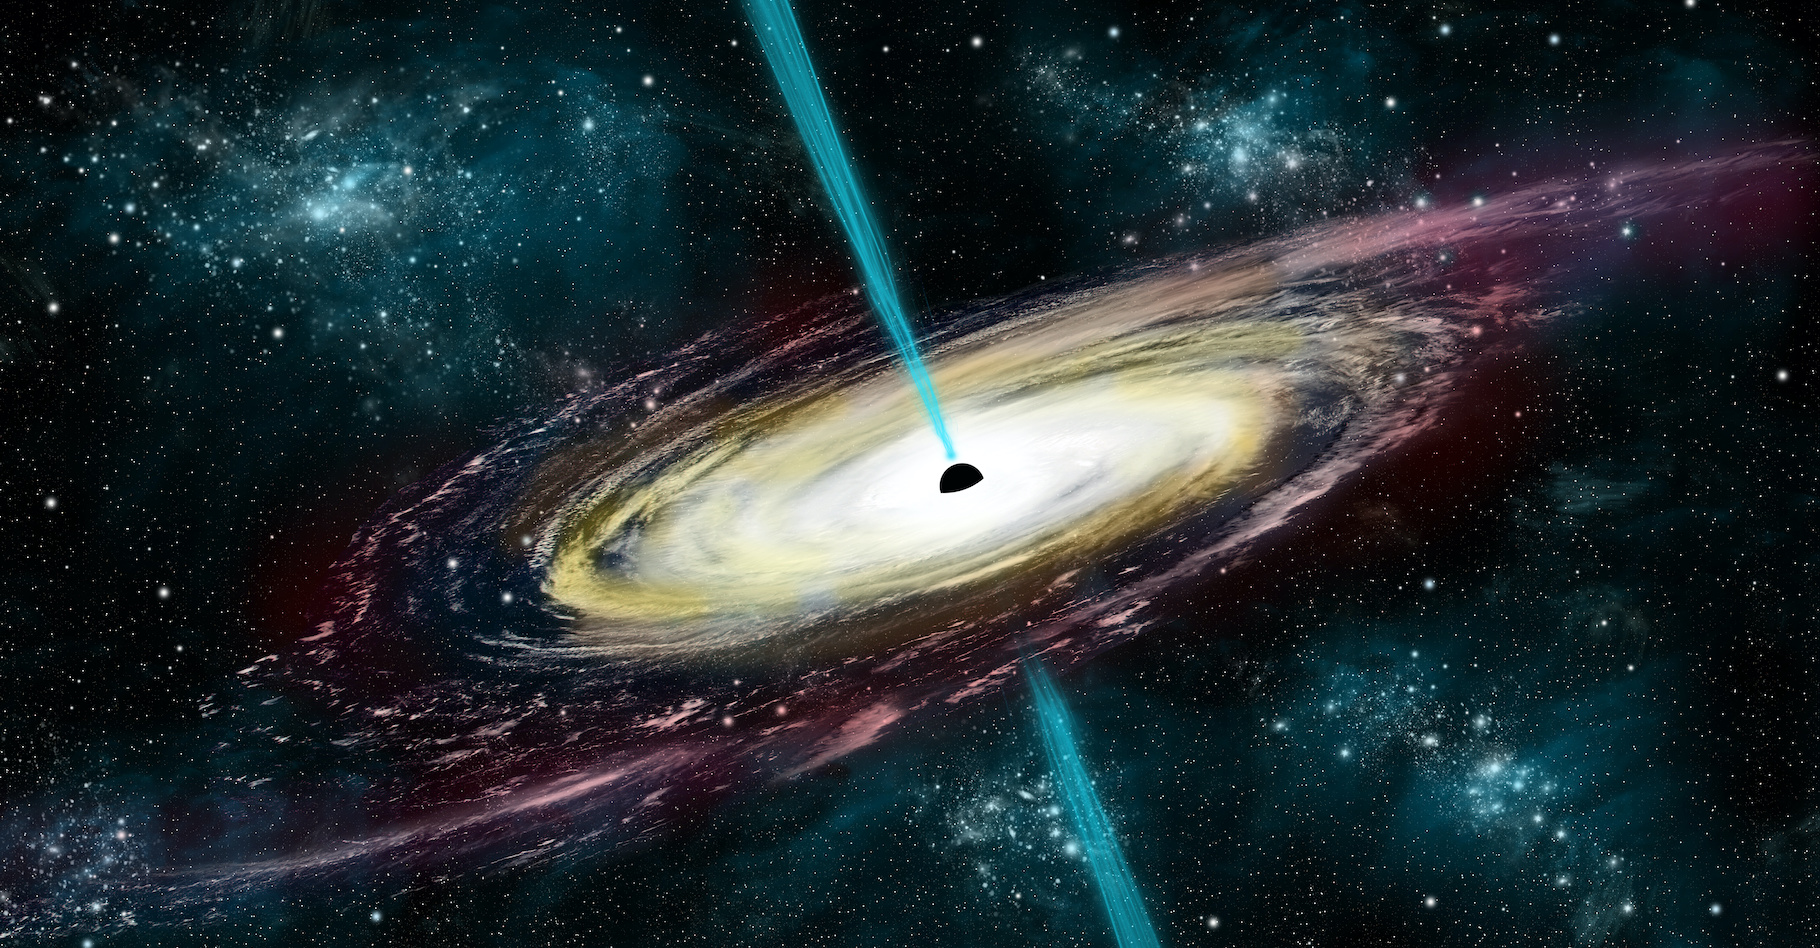 En sondant les rayons X émis par un trou noir supermassif, des astronomes ont enfin compris comment ces objets étonnants accélèrent des particules à des vitesses proches de celles de la lumière. © cosmicvue, Adobe Stock